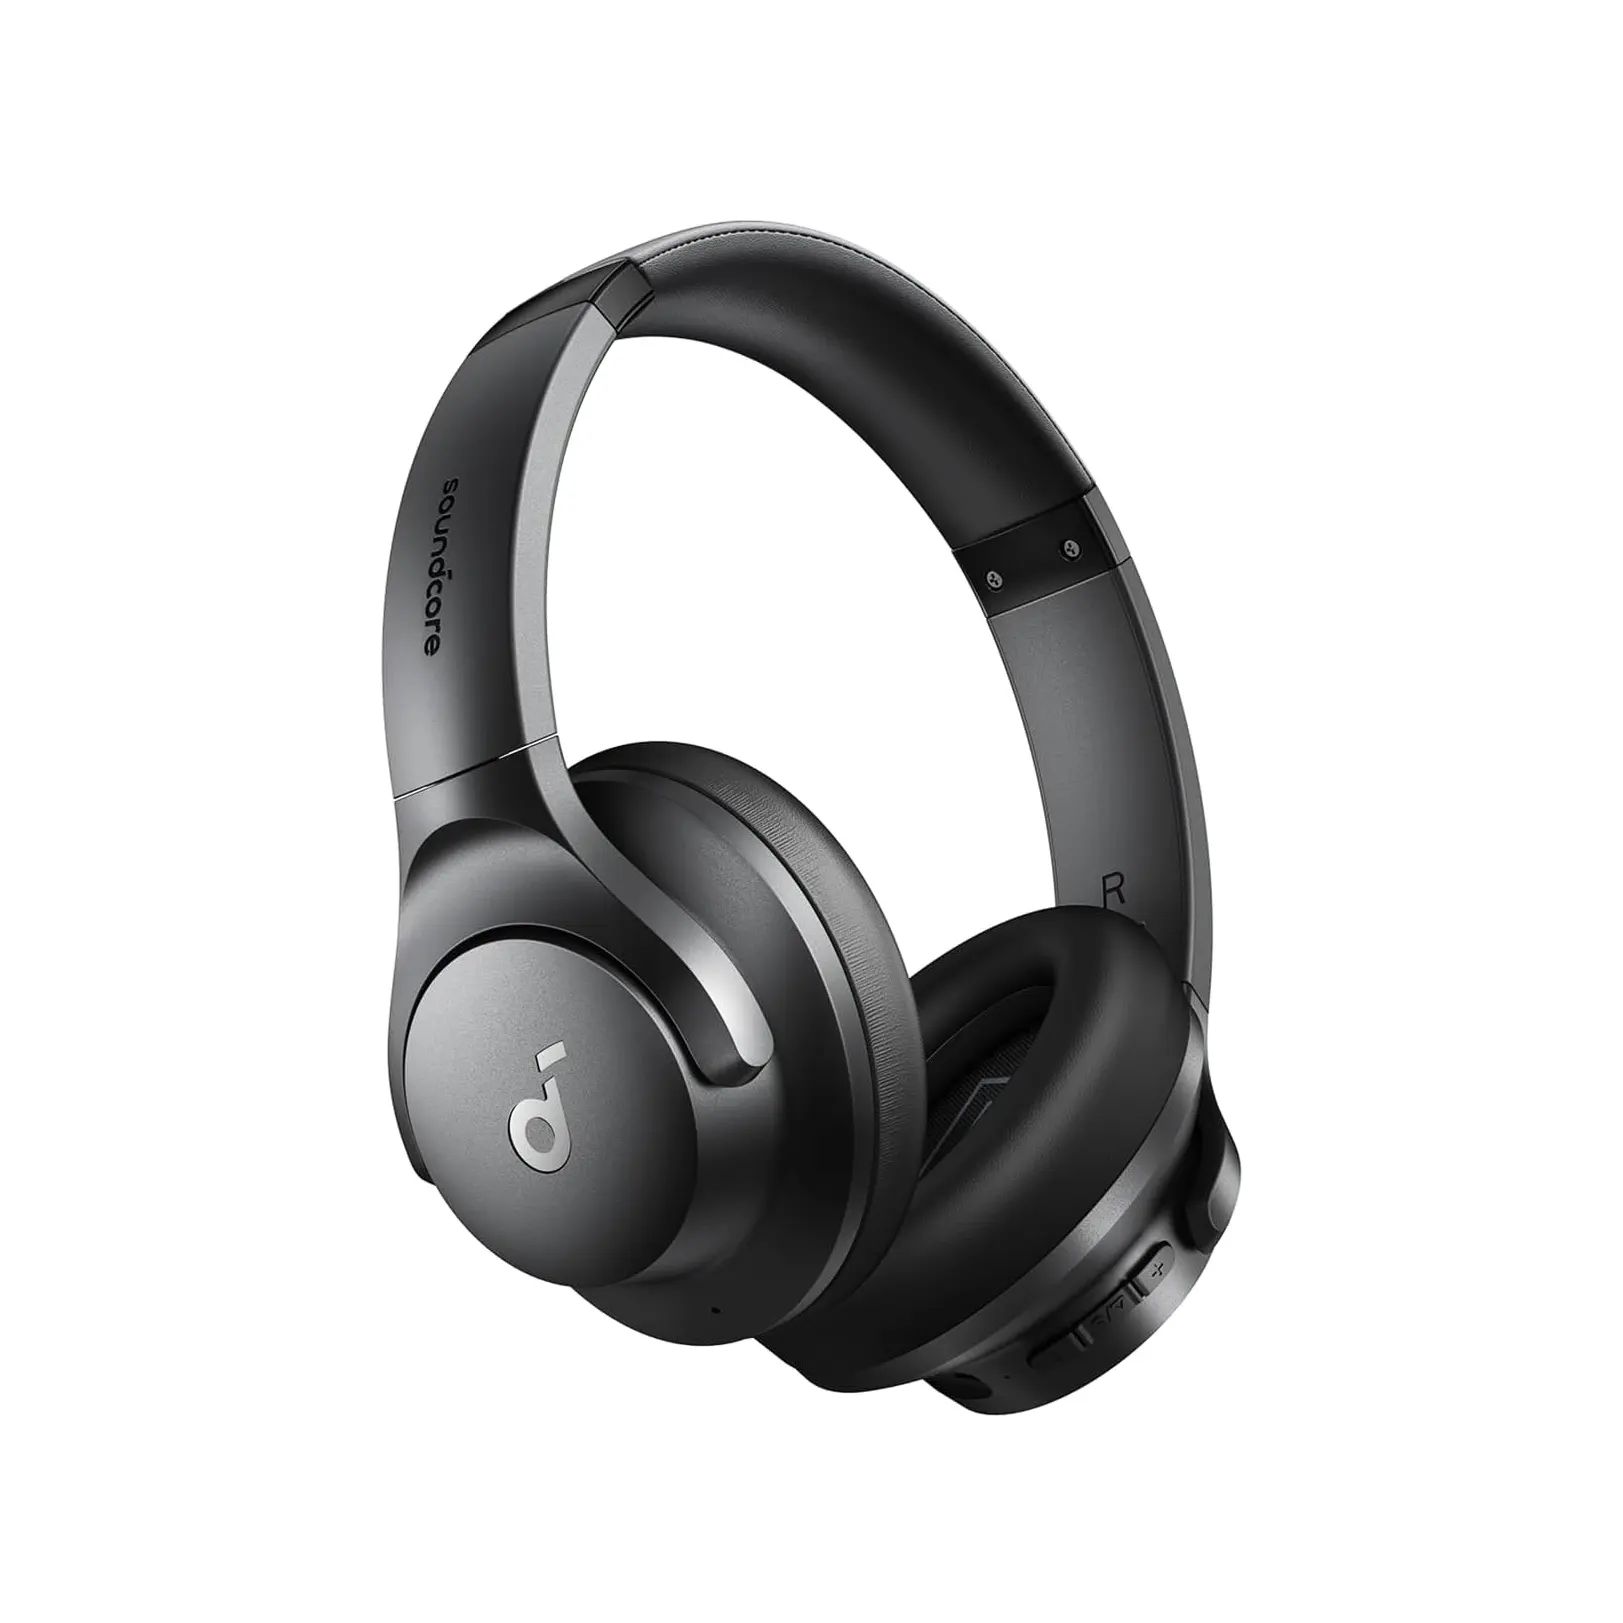 Soundcore Anker Q20i hibrid aktif gürültü önleyici kulaklıklar kablosuz aşırı kulak Bluetooth 40H uzun ANC çalma süresi hi-res ses